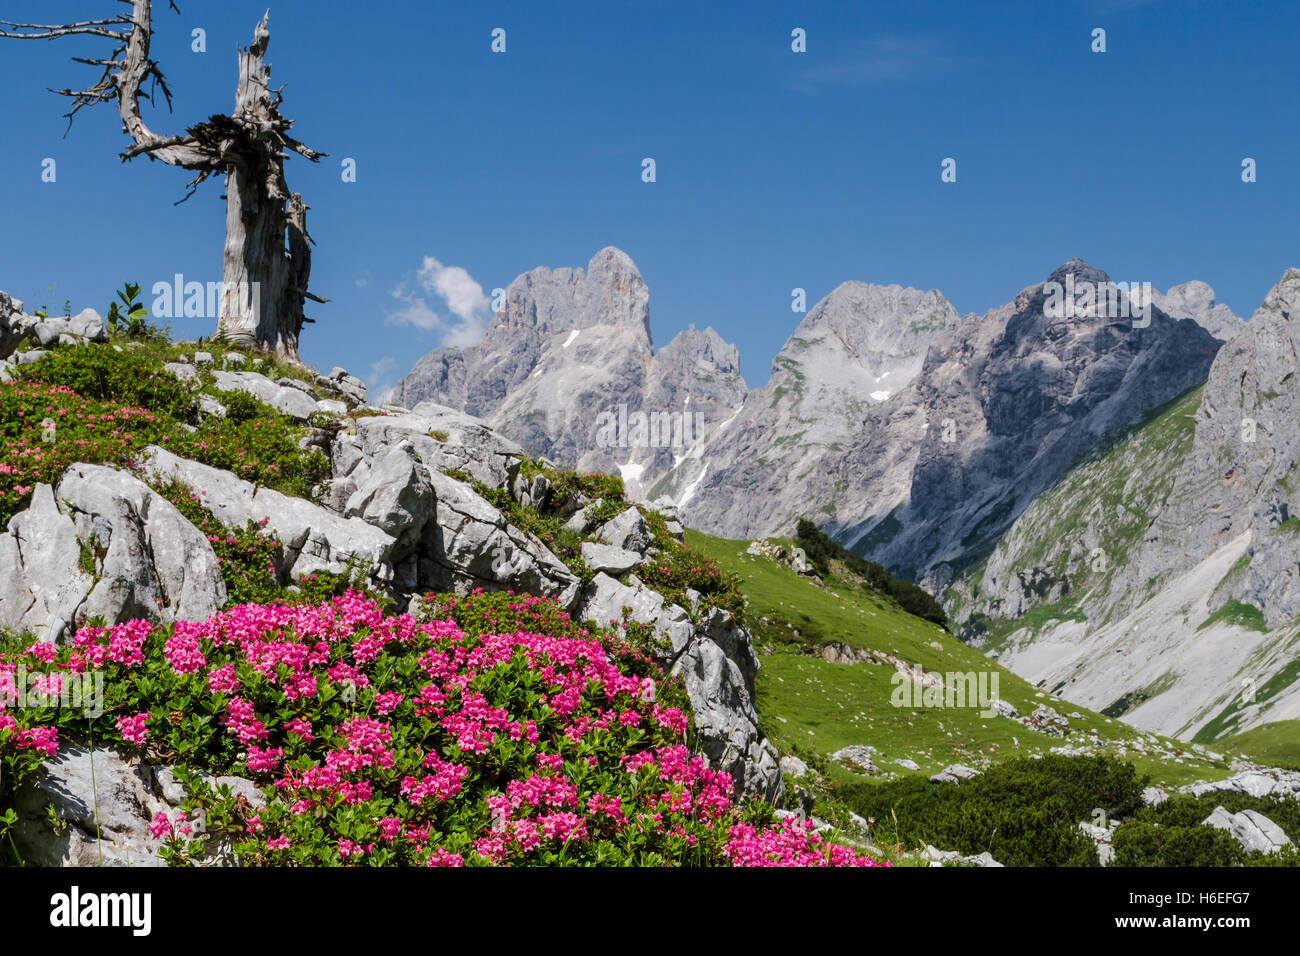 Alpenrosen blühen auf einer hohen Almwiese vor einem bergigen Hintergrund. Stockfoto